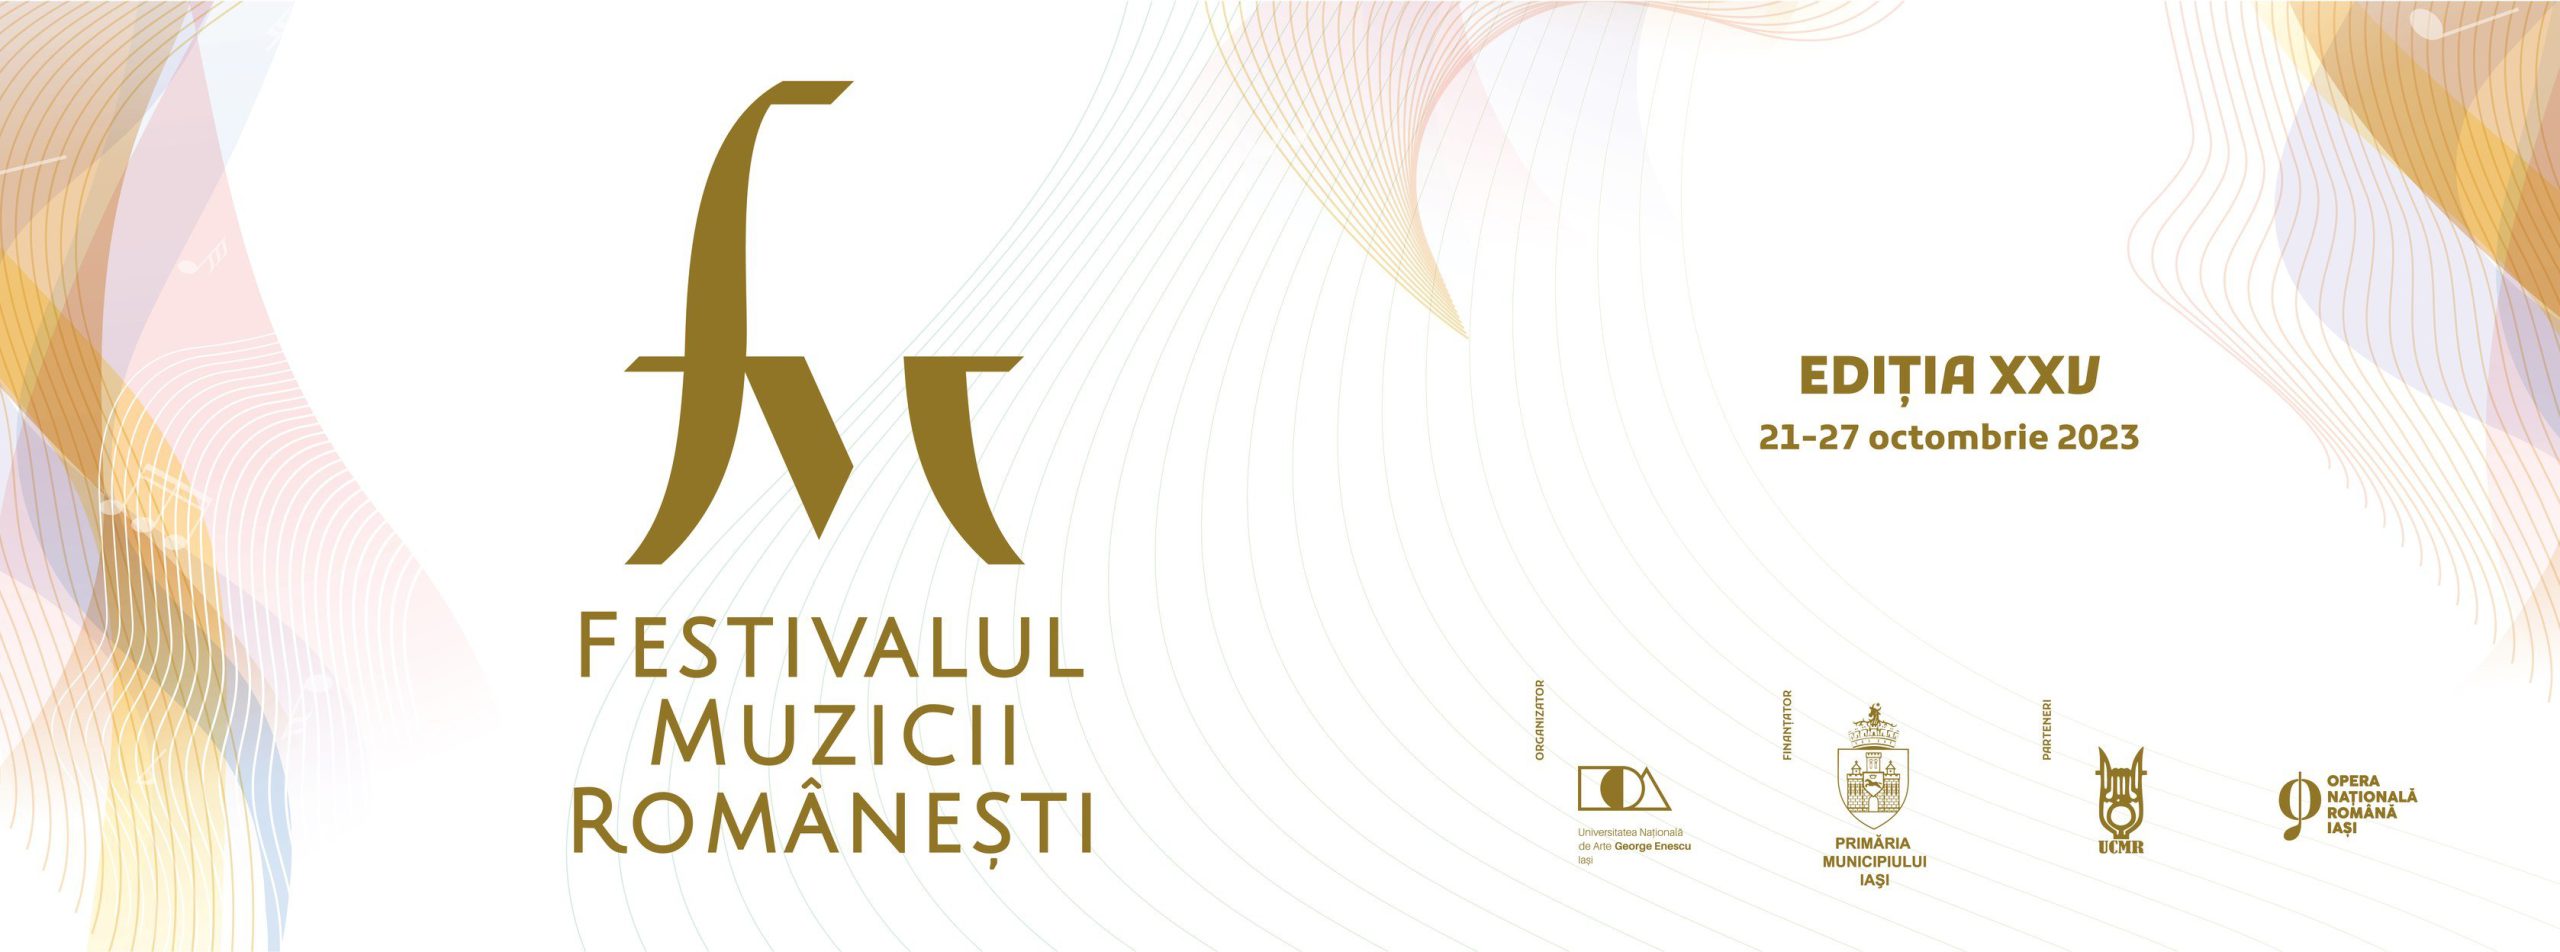  Cinci zile de muzică românească de calitate la Iaşi: a început Festivalului Muzicii Româneşti. Iată toate detaliile!